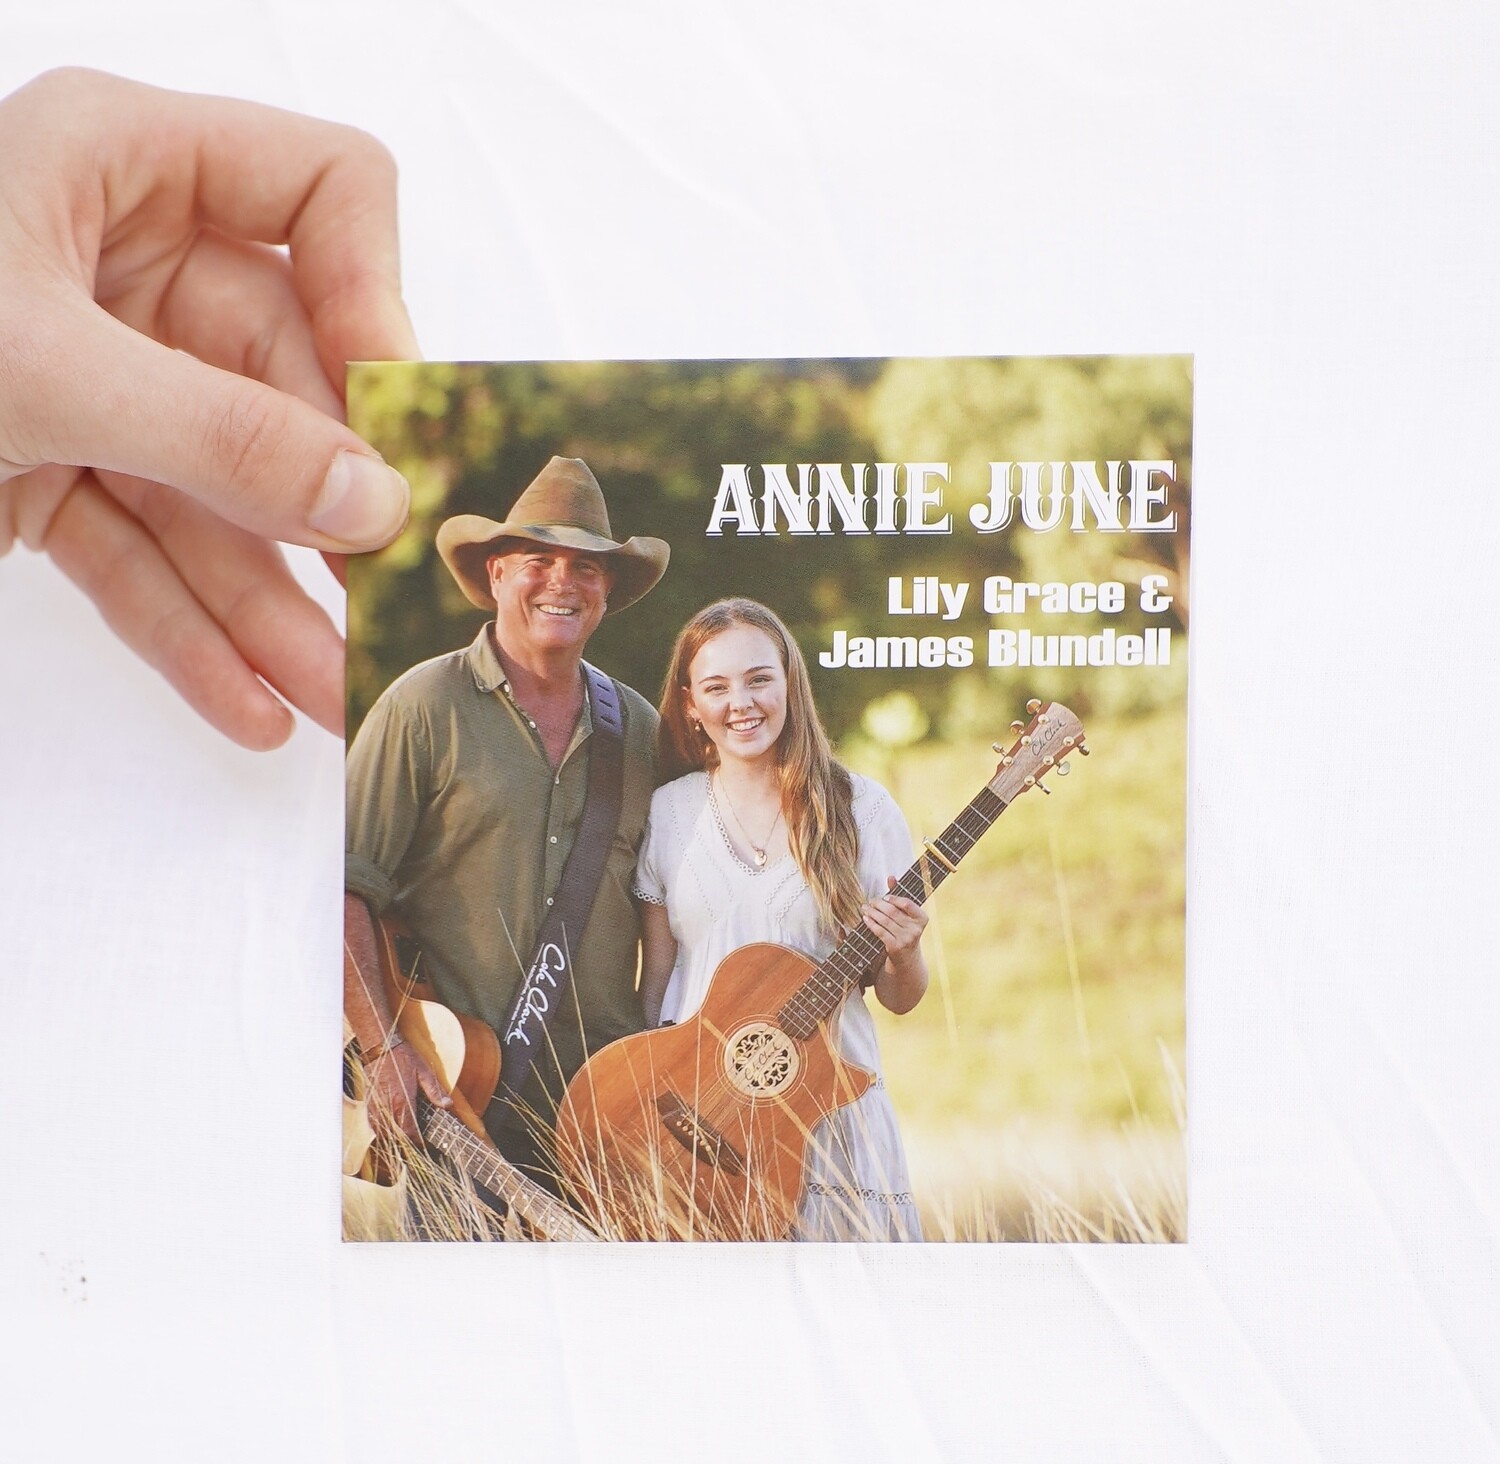 Annie June CD - AUS only